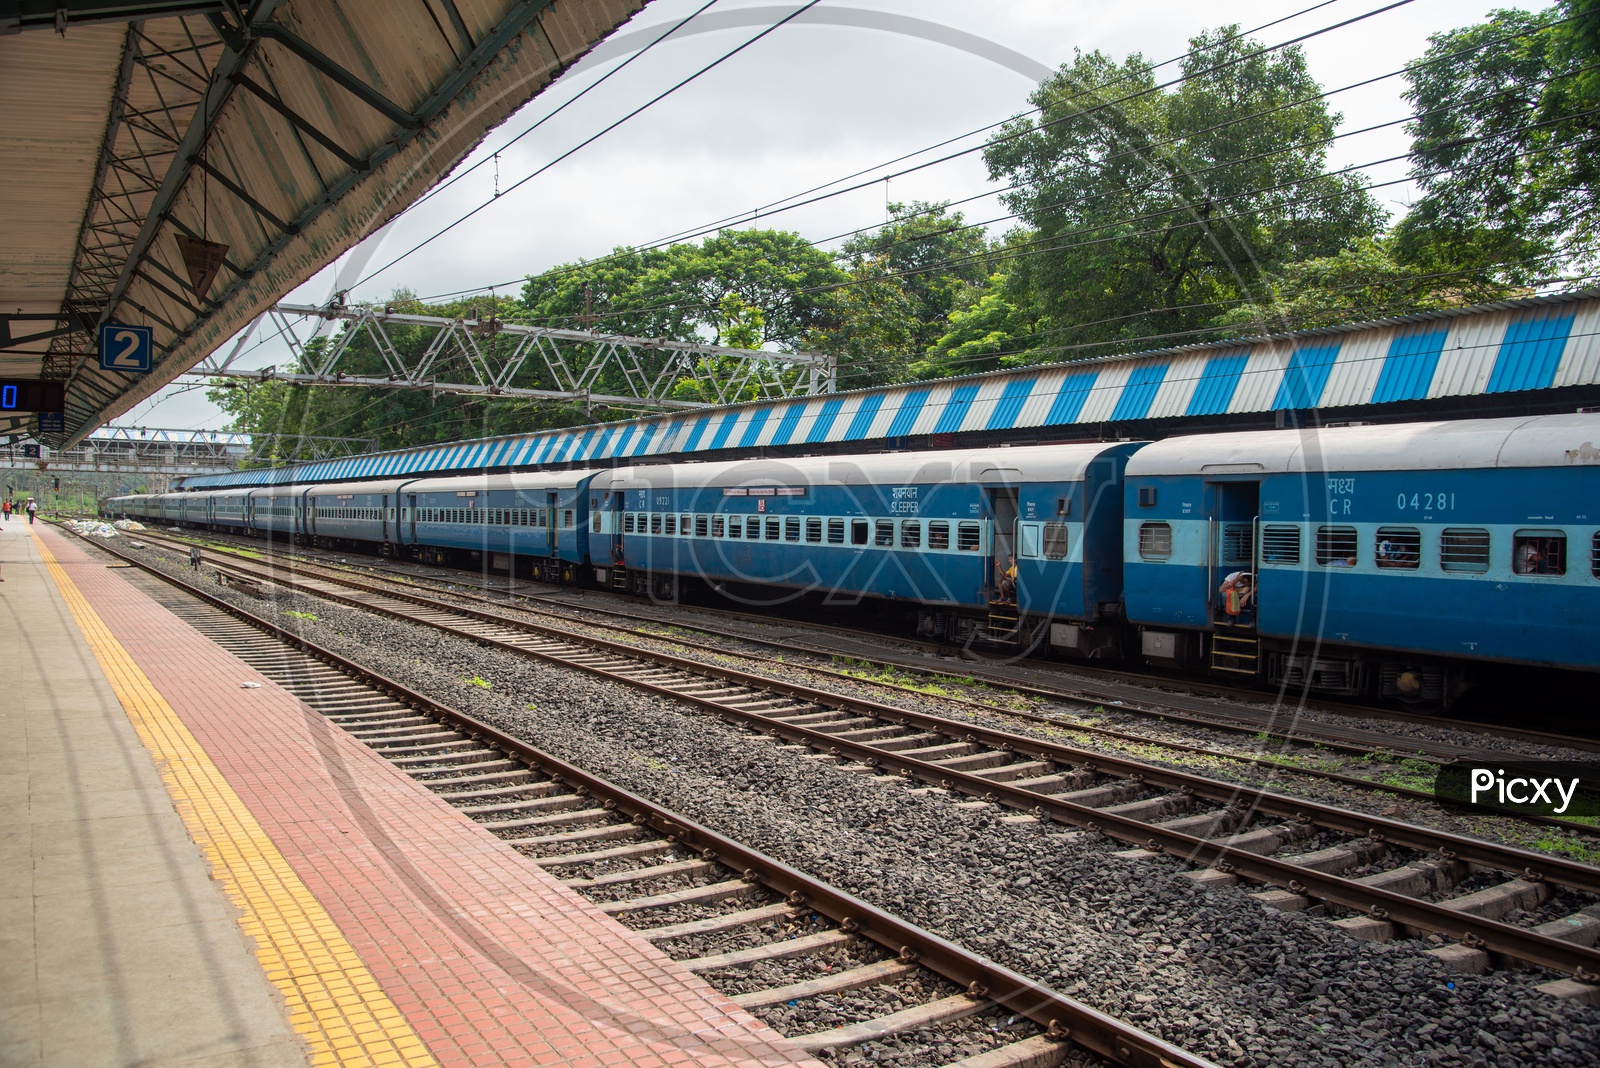 Indian Railways Passenger Express Train at Karjat Station